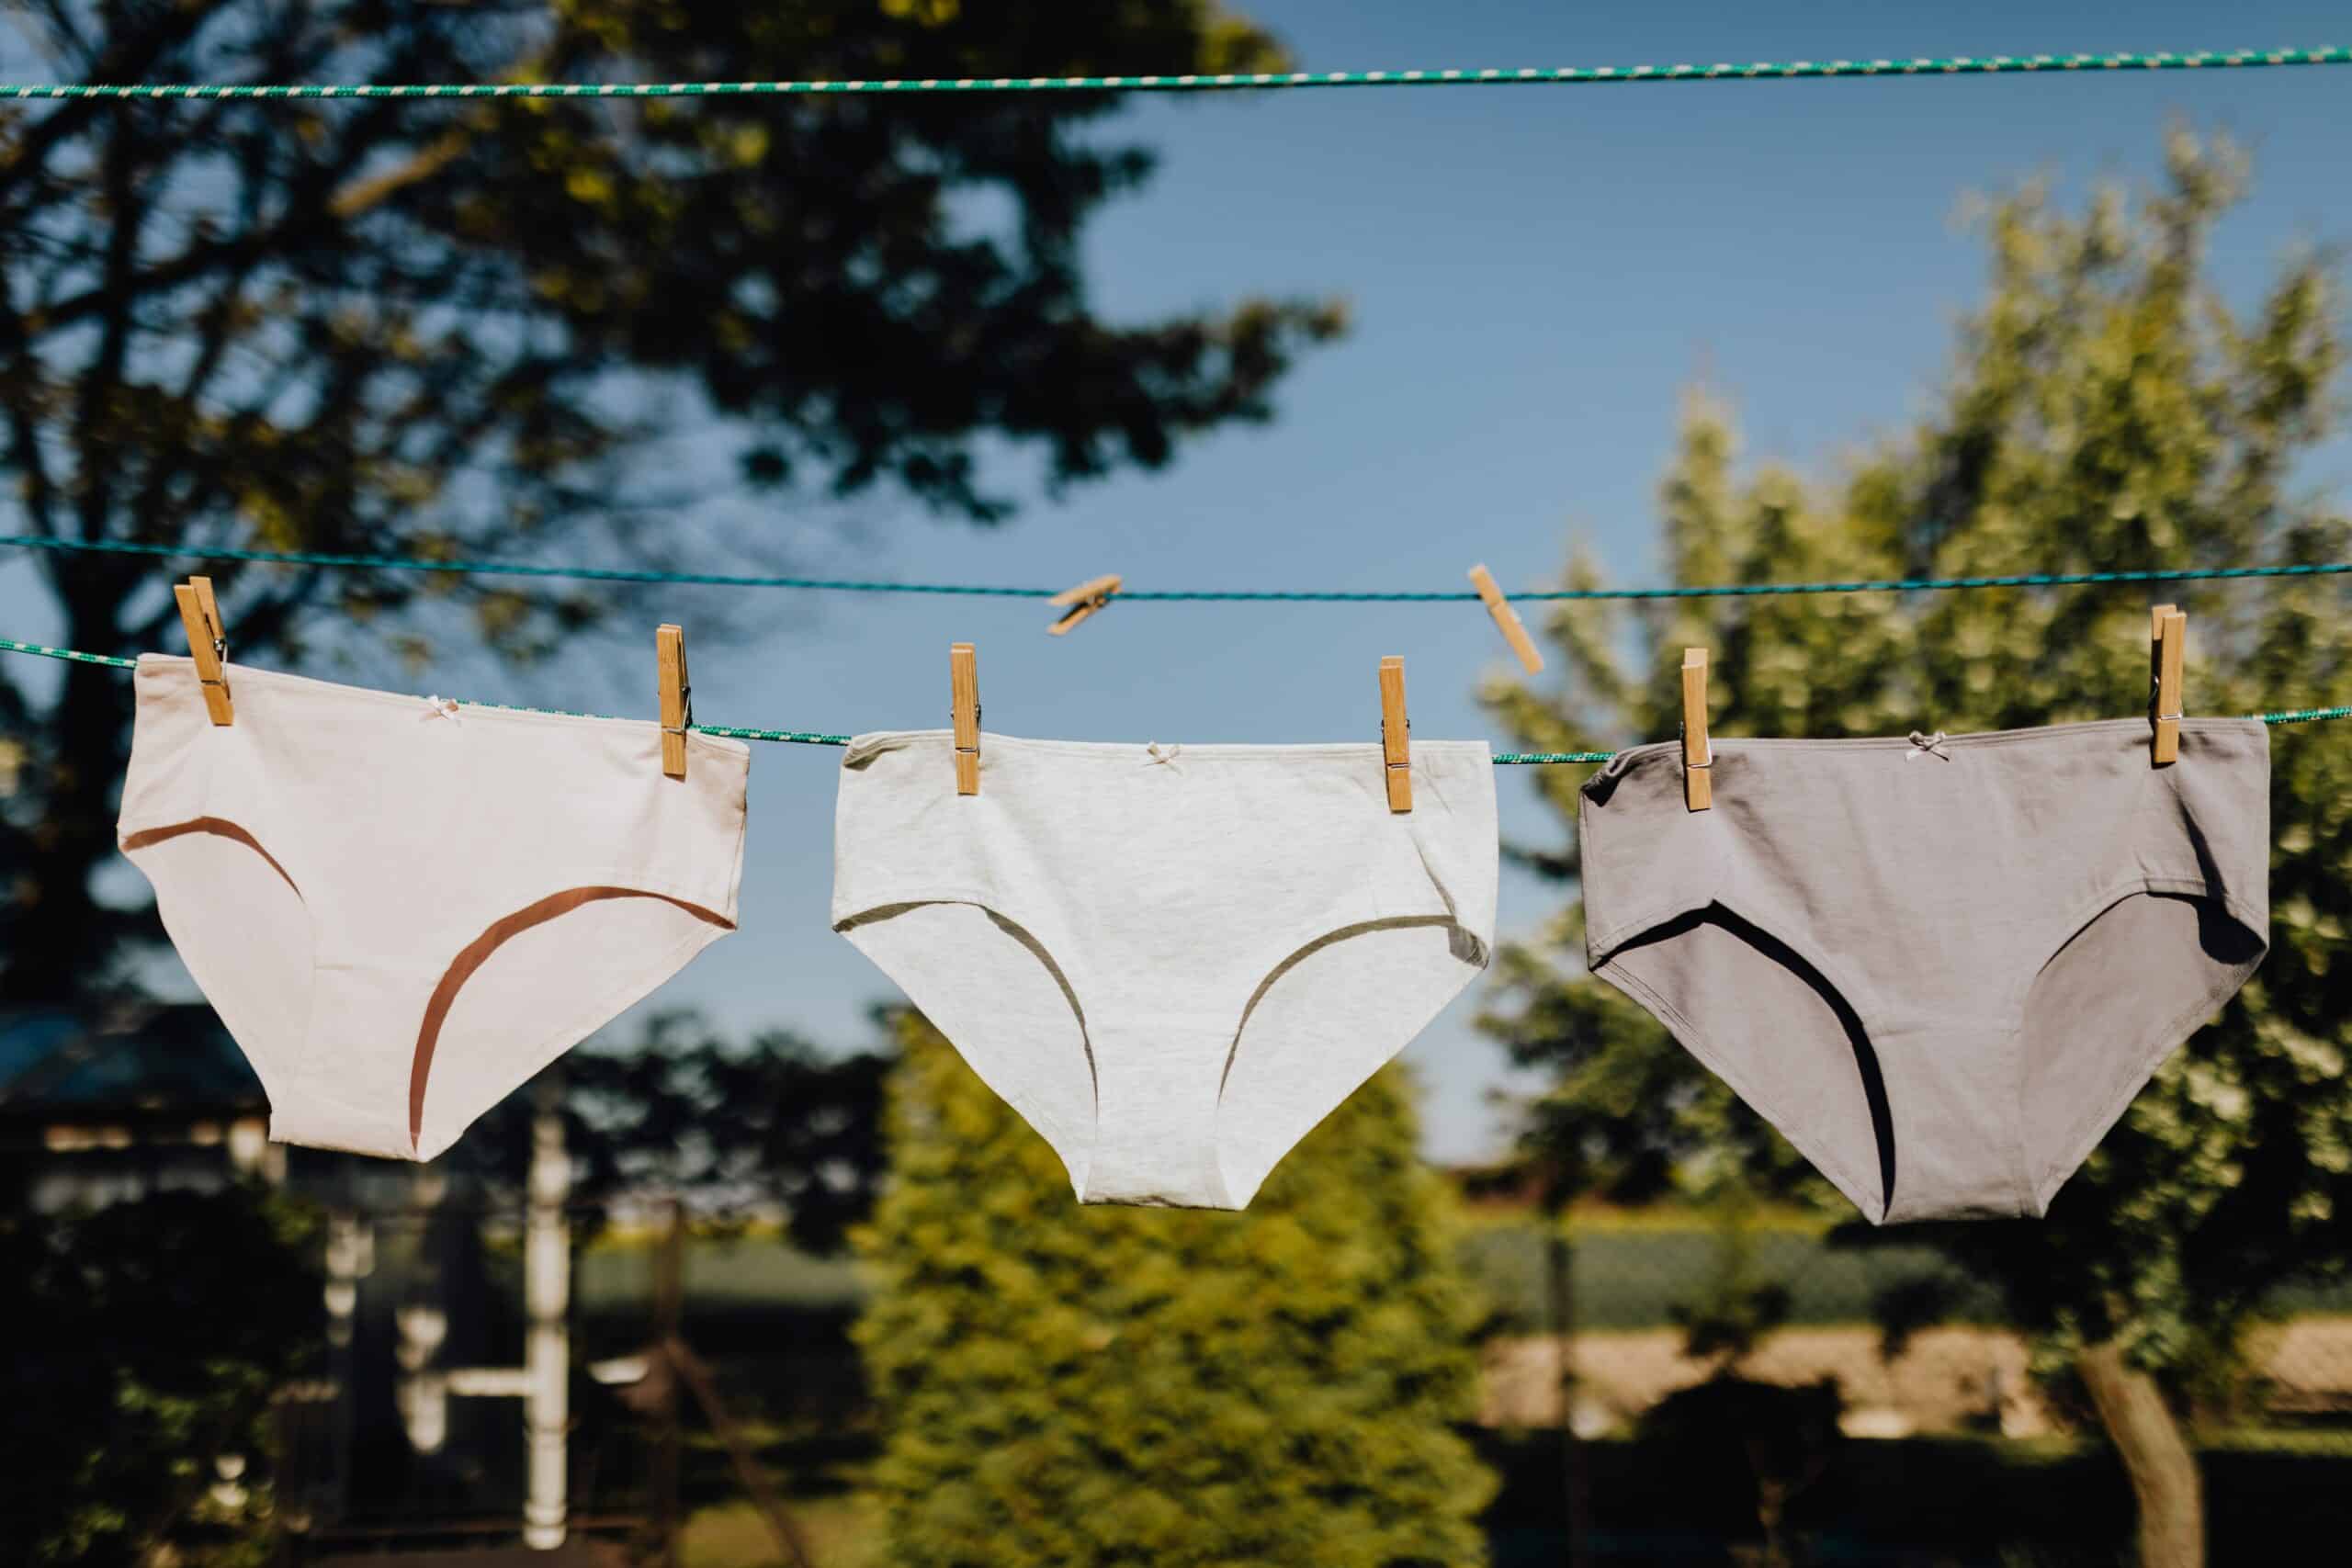 Clean underwear hanging on clothesline.